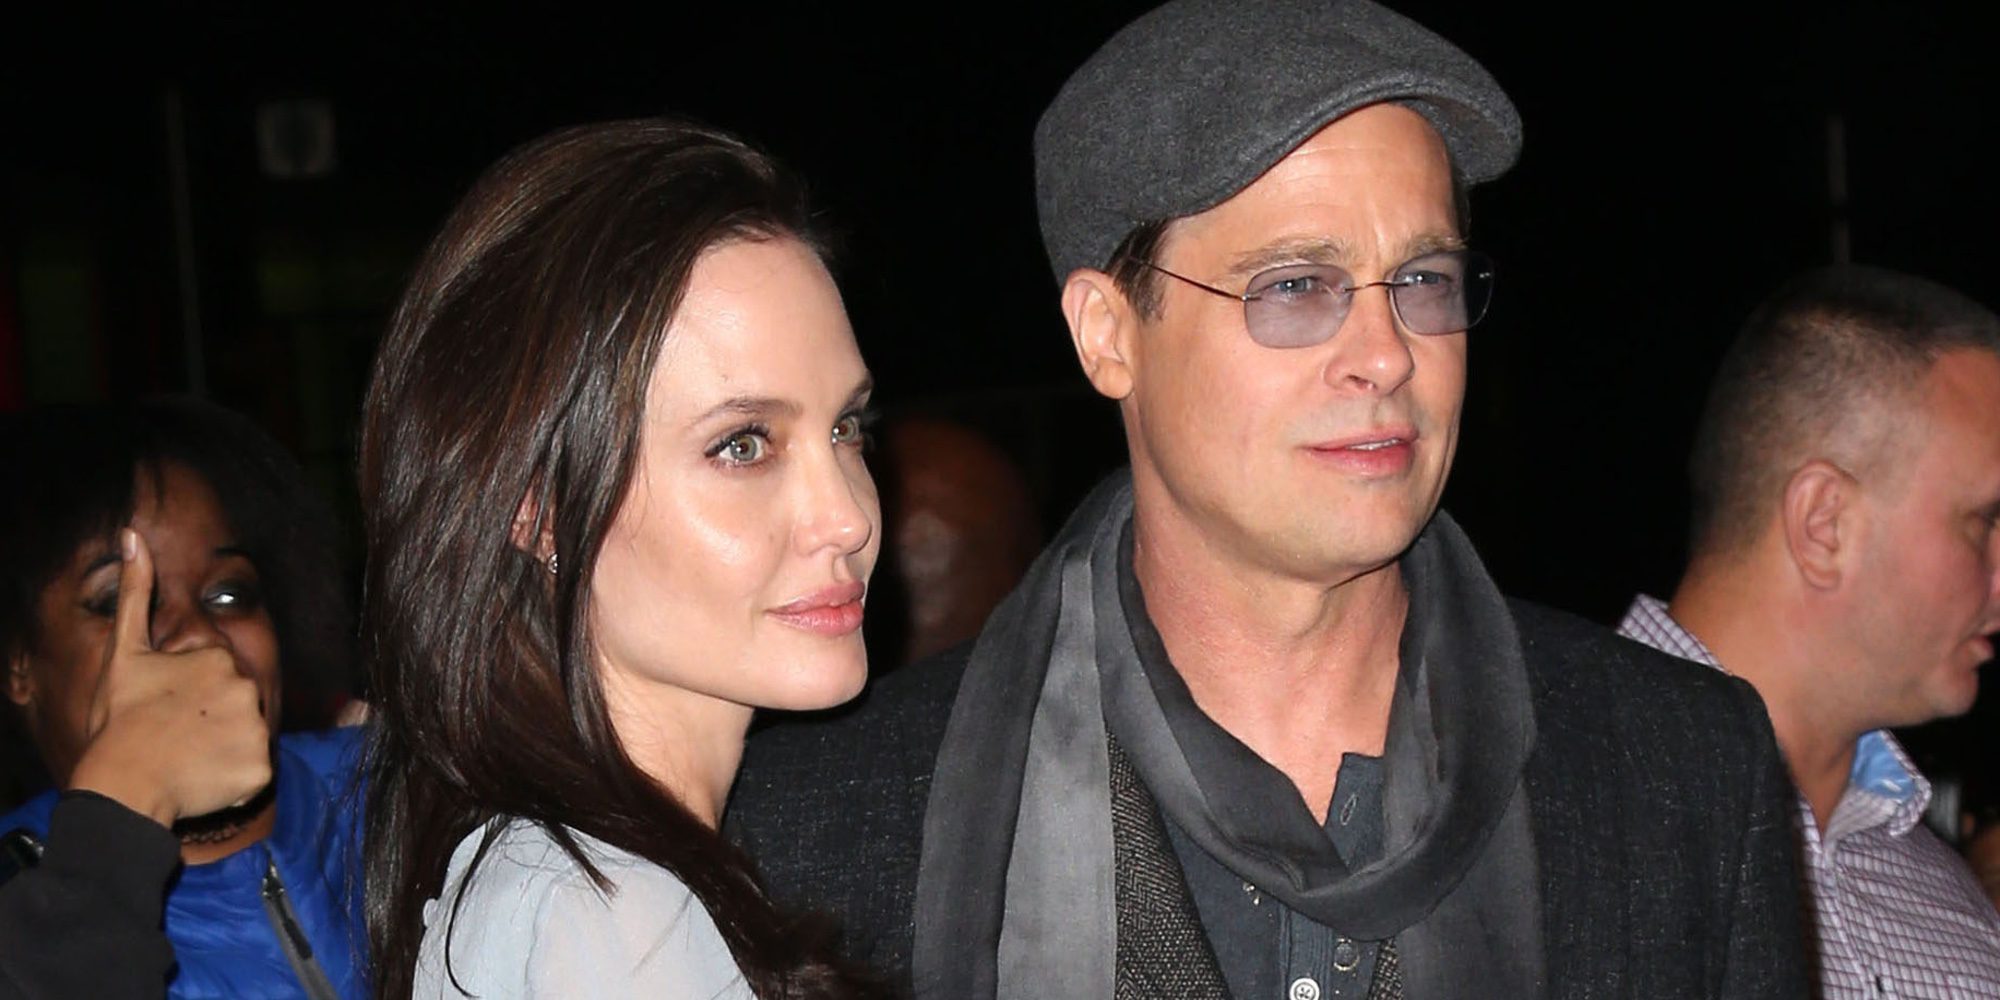 Angelina Jolie quiso salvar su matrimonio con Brad Pitt haciendo juntos una película